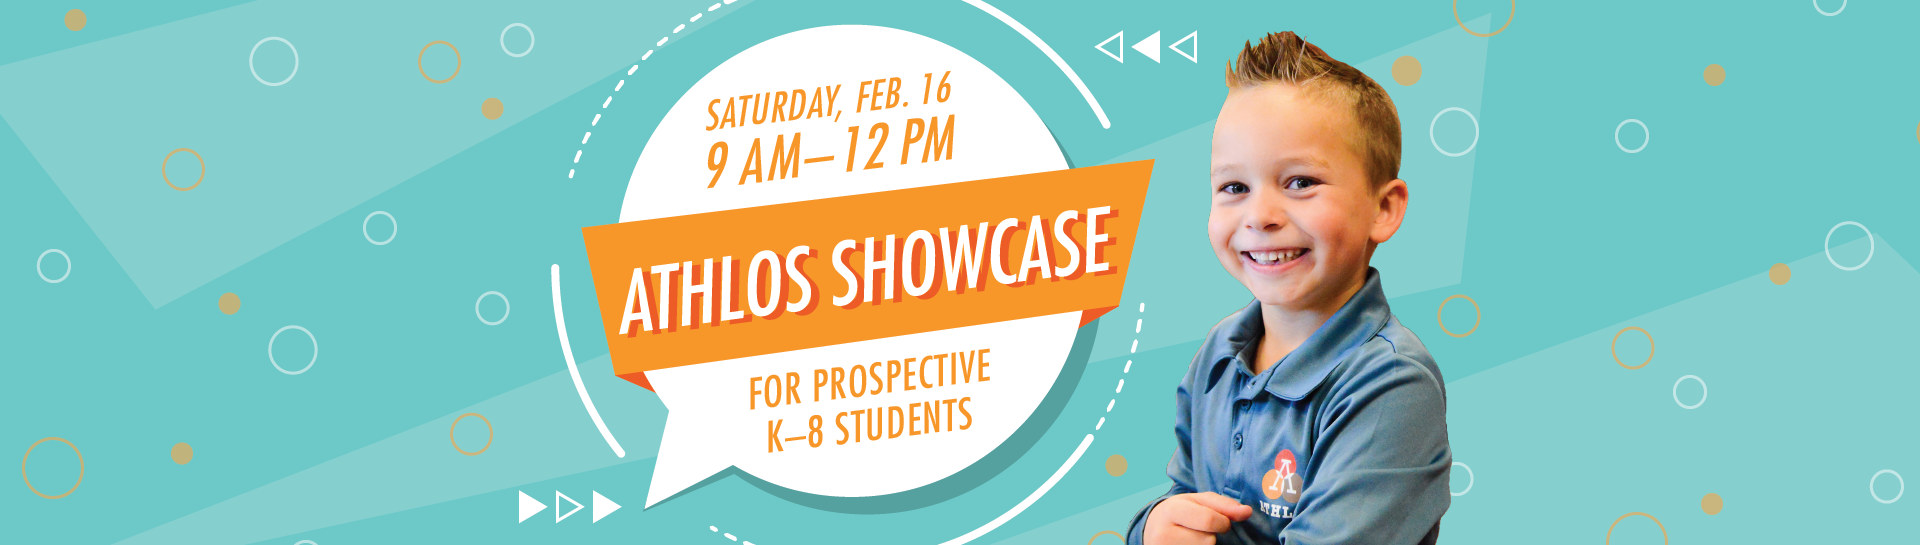 Athlos Showcase - Saturday, February 16